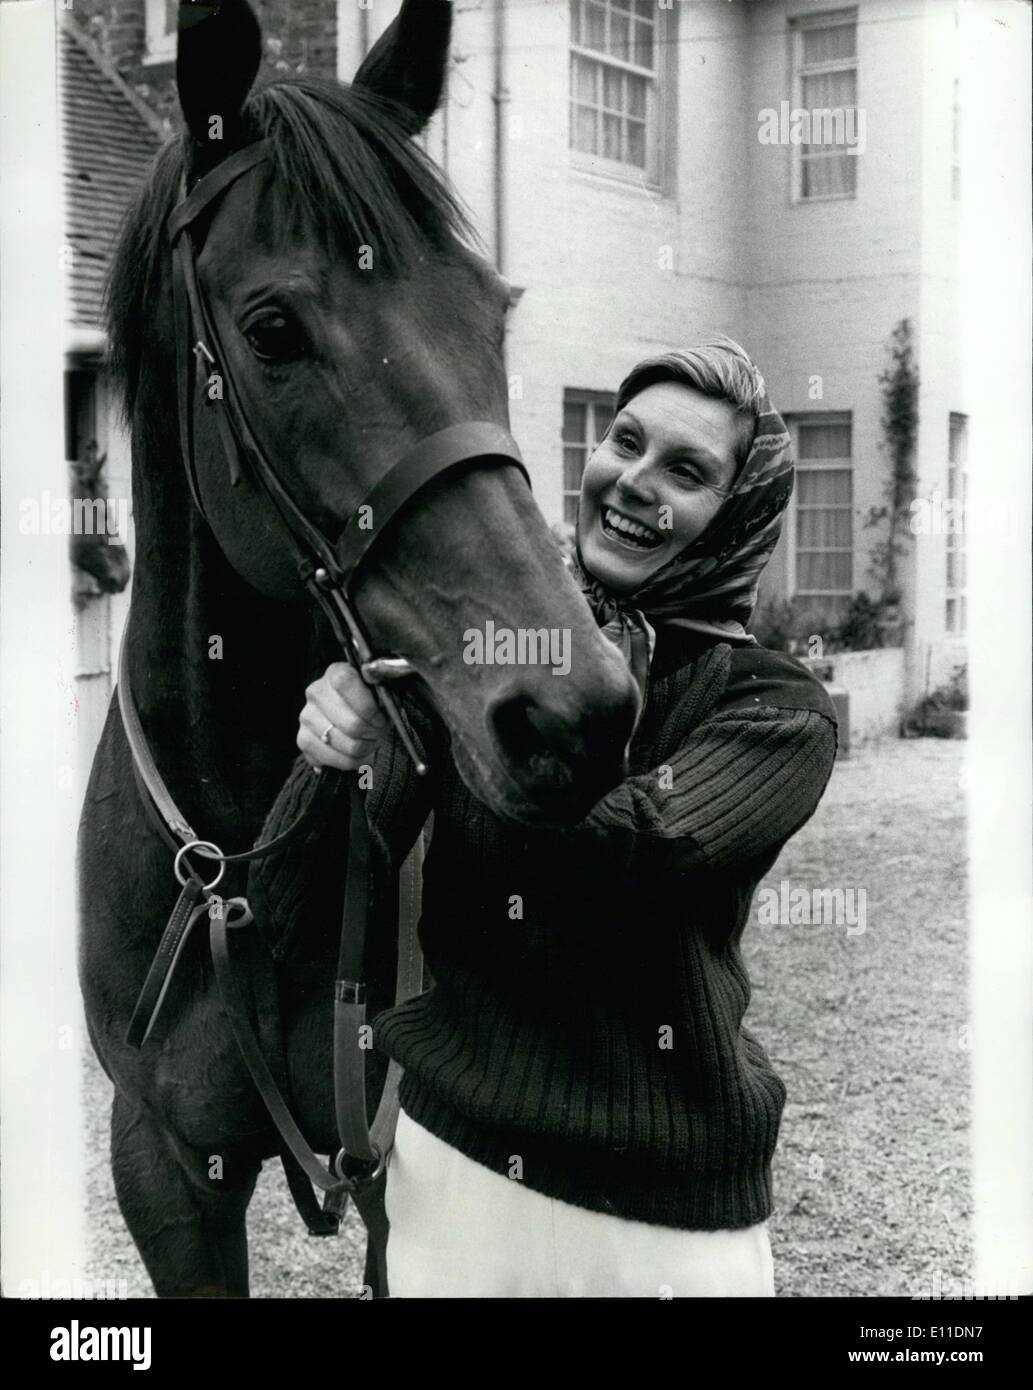 Mai 05, 1977 - Angela Rippon de prendre les courses de chevaux : Angela Rippon le présentateur de télévision de la BBC - la fille aux multiples talents a frappé la lire encore une fois hier en obtenant sa licence de jockey club pour la course de chevaux. La nuit d'avant, samedi, elle a été l'hôte du Concours Eurovision de la chanson. Elle était à l'extérieur un cheval appelé Maxi's Taxi,. c'est la première fois qu'elle avait été sur un cheval qui est classée sous la forme de livres comme un montage approprié pour un apprenti. Le 17 mai à Goodwood Banque D'Images